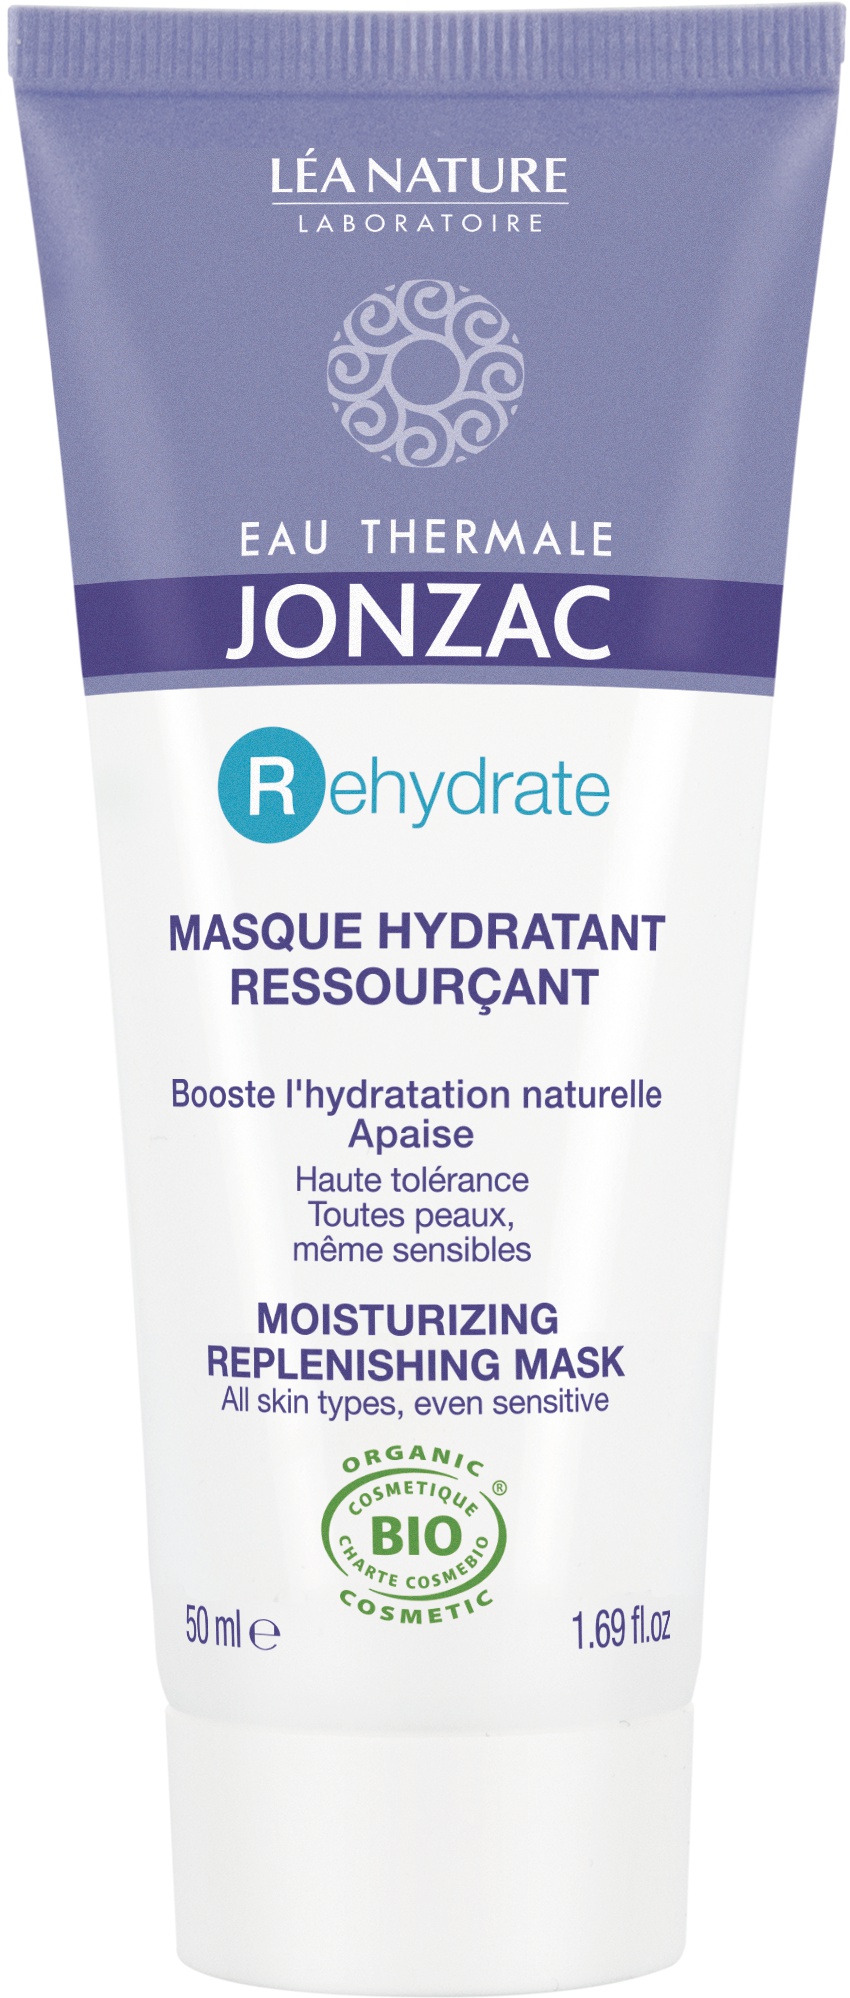 Jonzac Rehydrate Repleneshing Mask